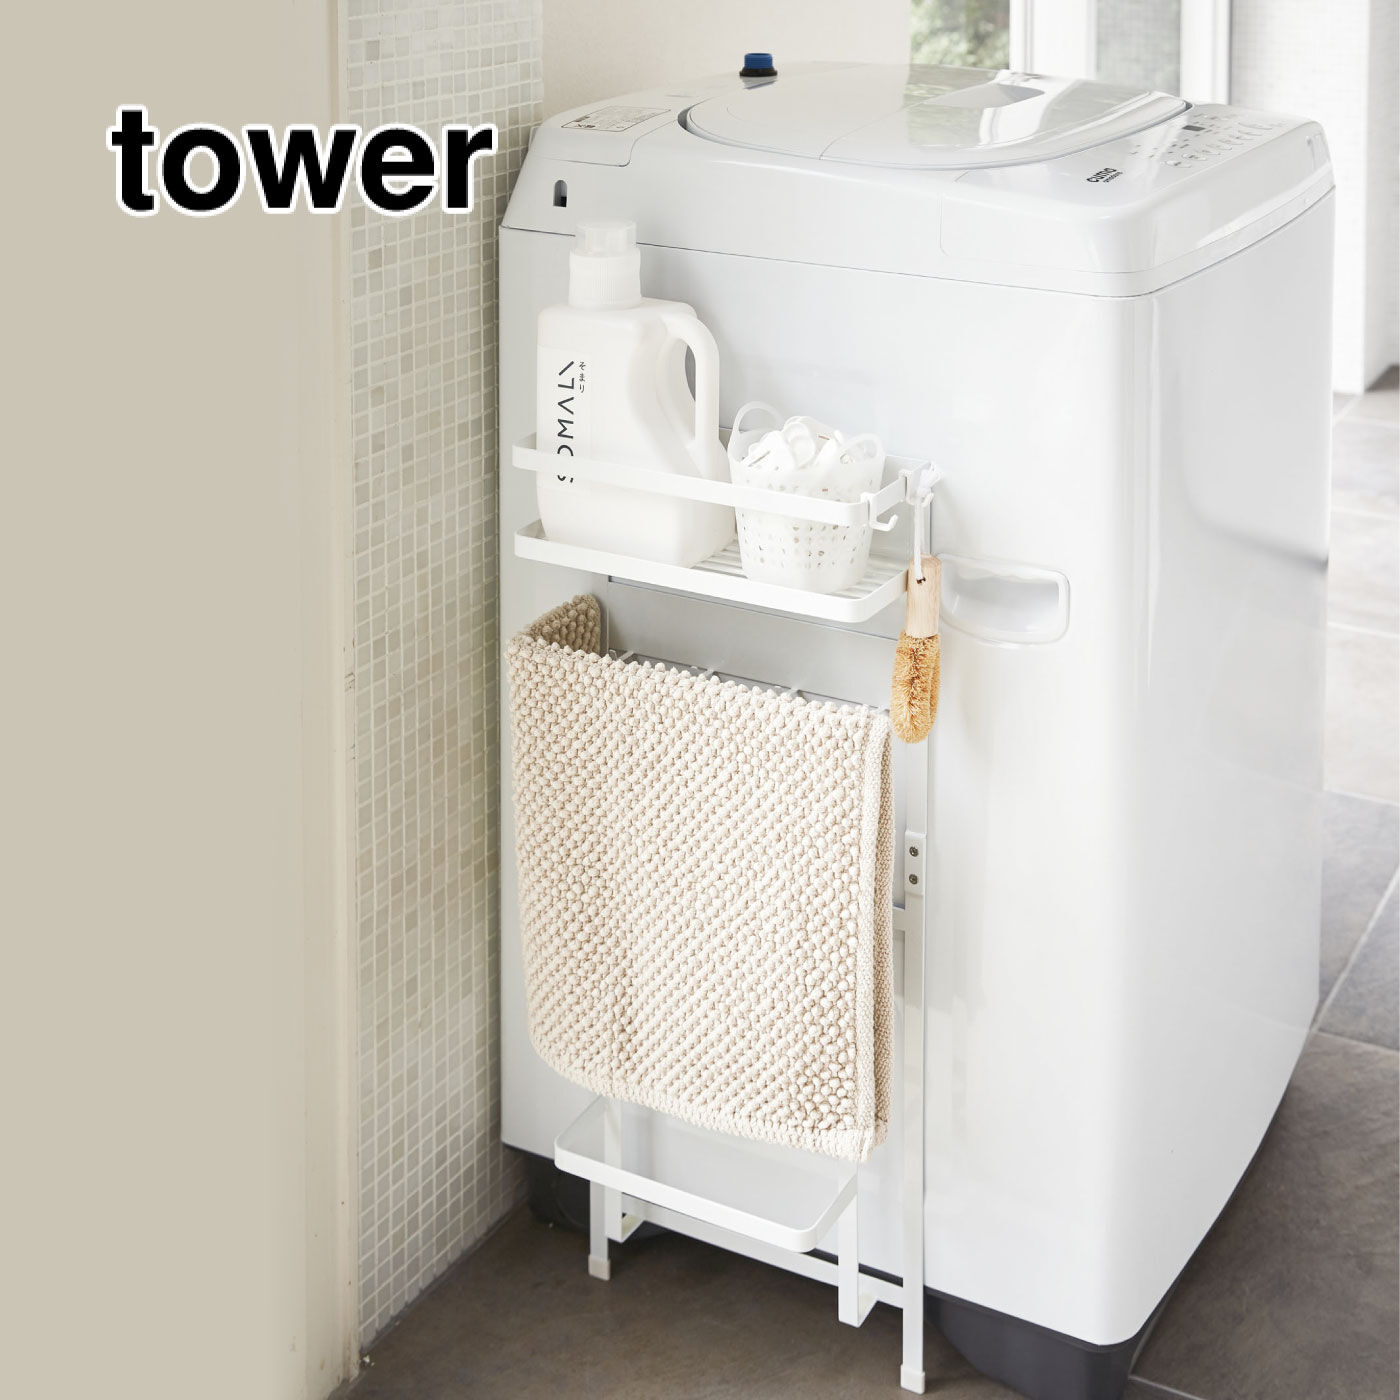 FELISSIMO PARTNERS | タワー 洗濯機横マグネット 収納ラック